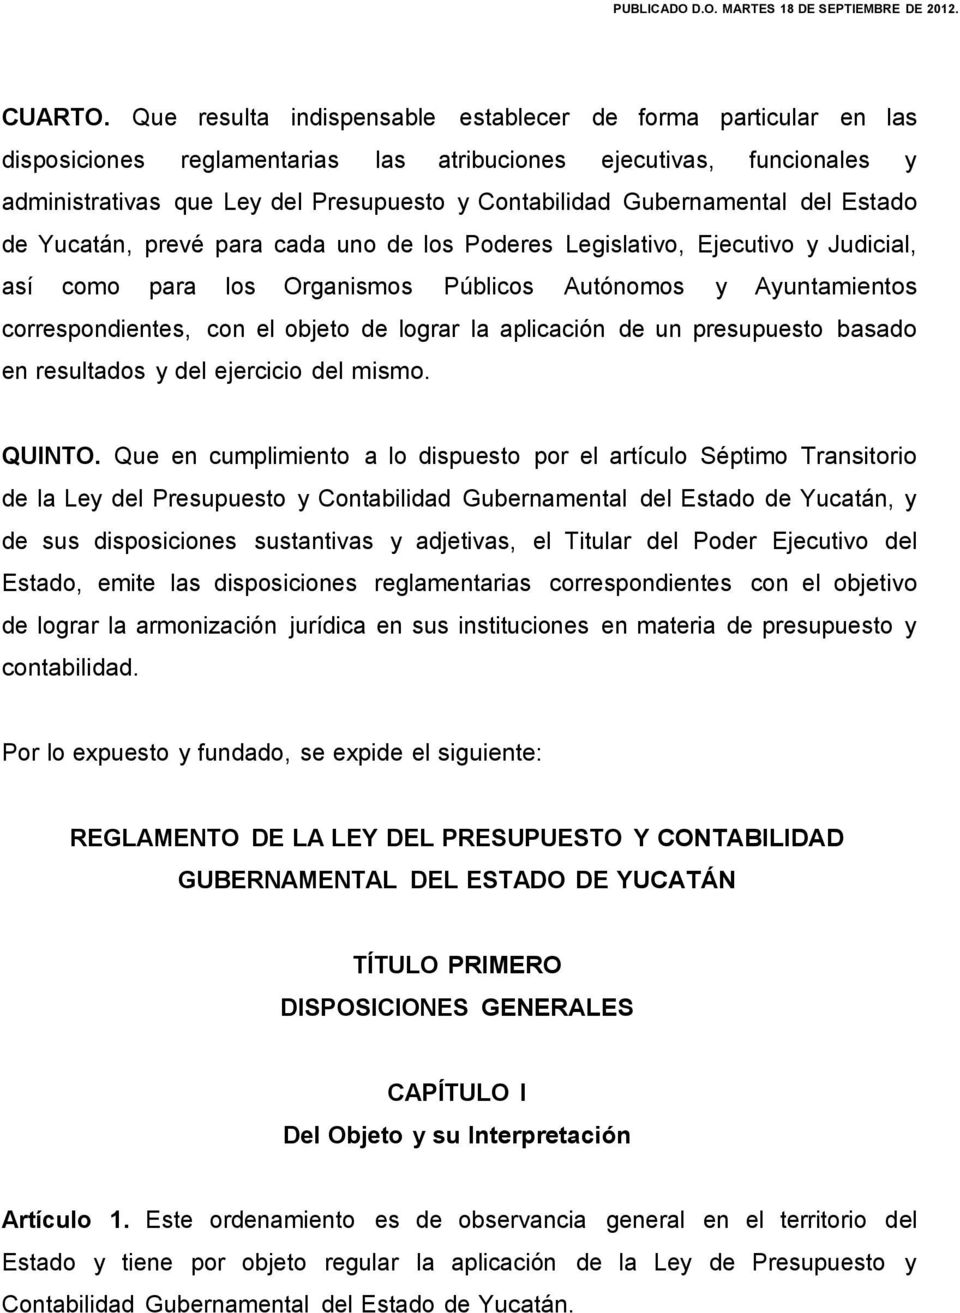 Gubernamental del Estado de Yucatán, prevé para cada uno de los Poderes Legislativo, Ejecutivo y Judicial, así como para los Organismos Públicos Autónomos y Ayuntamientos correspondientes, con el